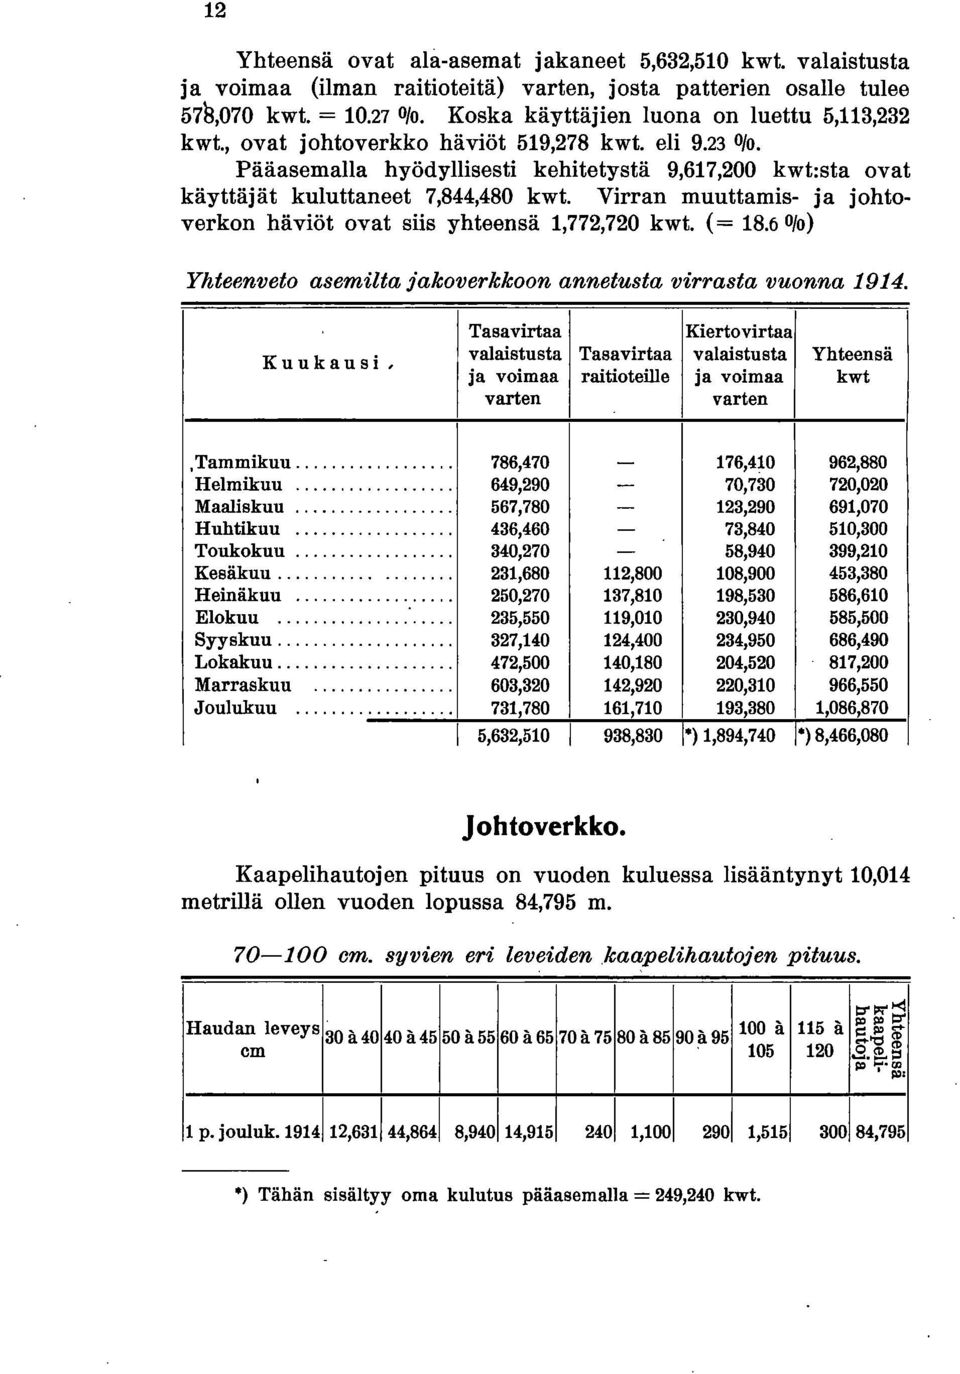 Virran muuttamis- ja johtoverkon häviöt ovat siis yhteensä 1,772,720 kwt. (= 18.6 Olo) Yhteenveto asemilta jakoverkkoon annetusta virrasta vuonna 1914.